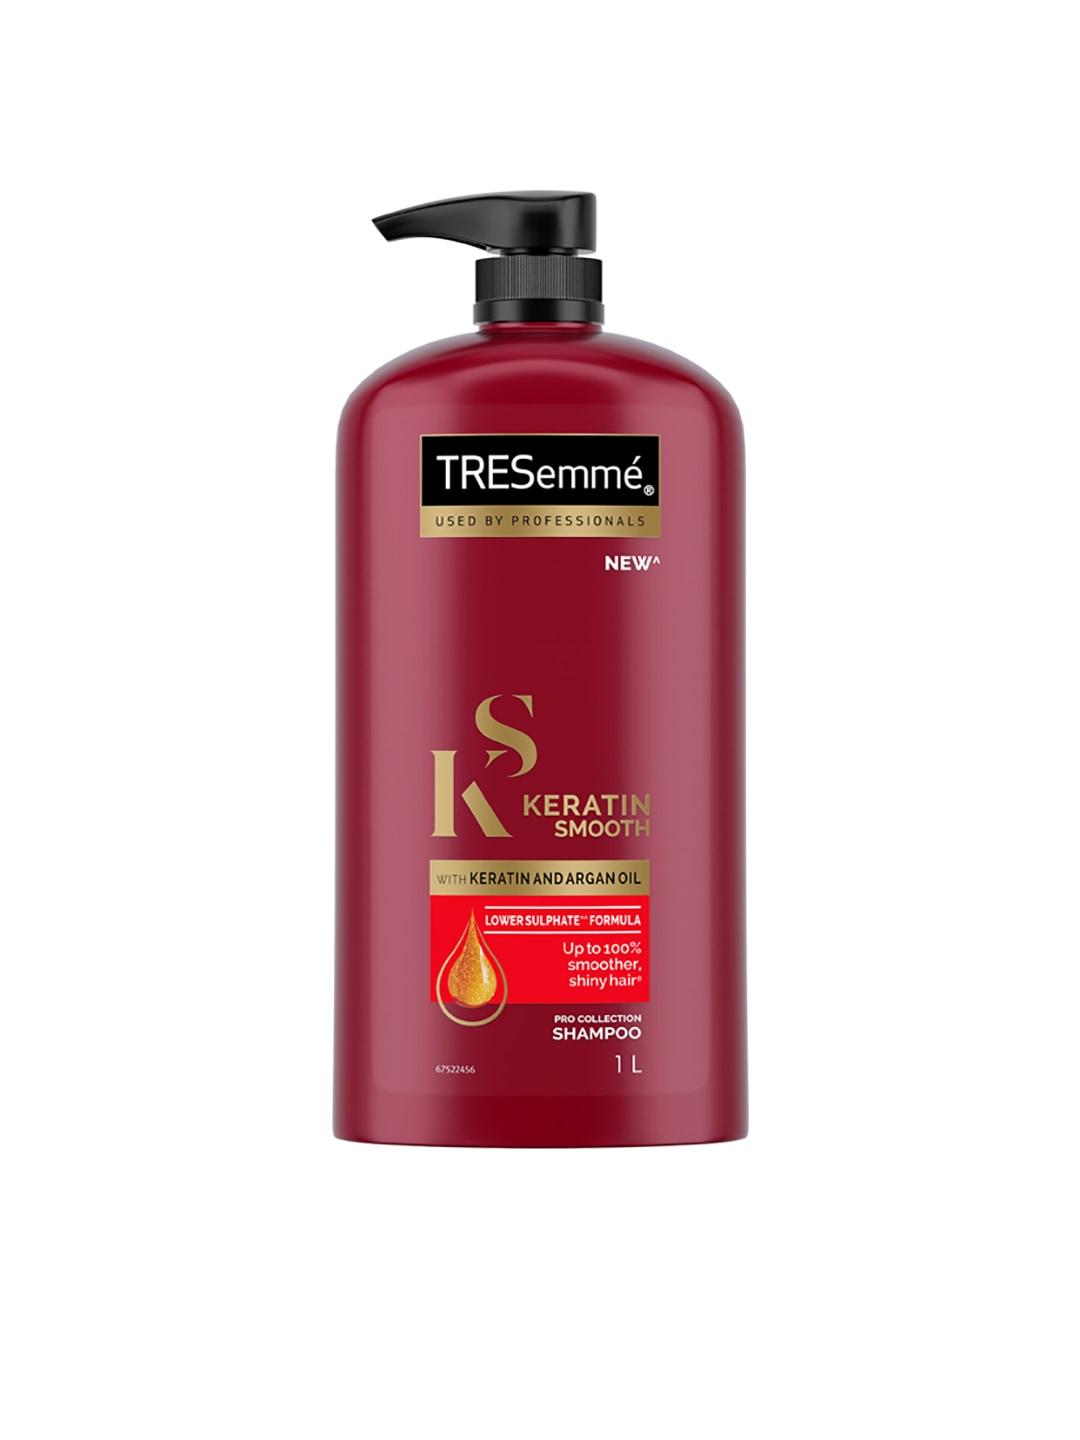 tresemme-keratin-smooth-shampoo-with-keratin-&-argan-oil-for-straight,-shiny-hair--1l